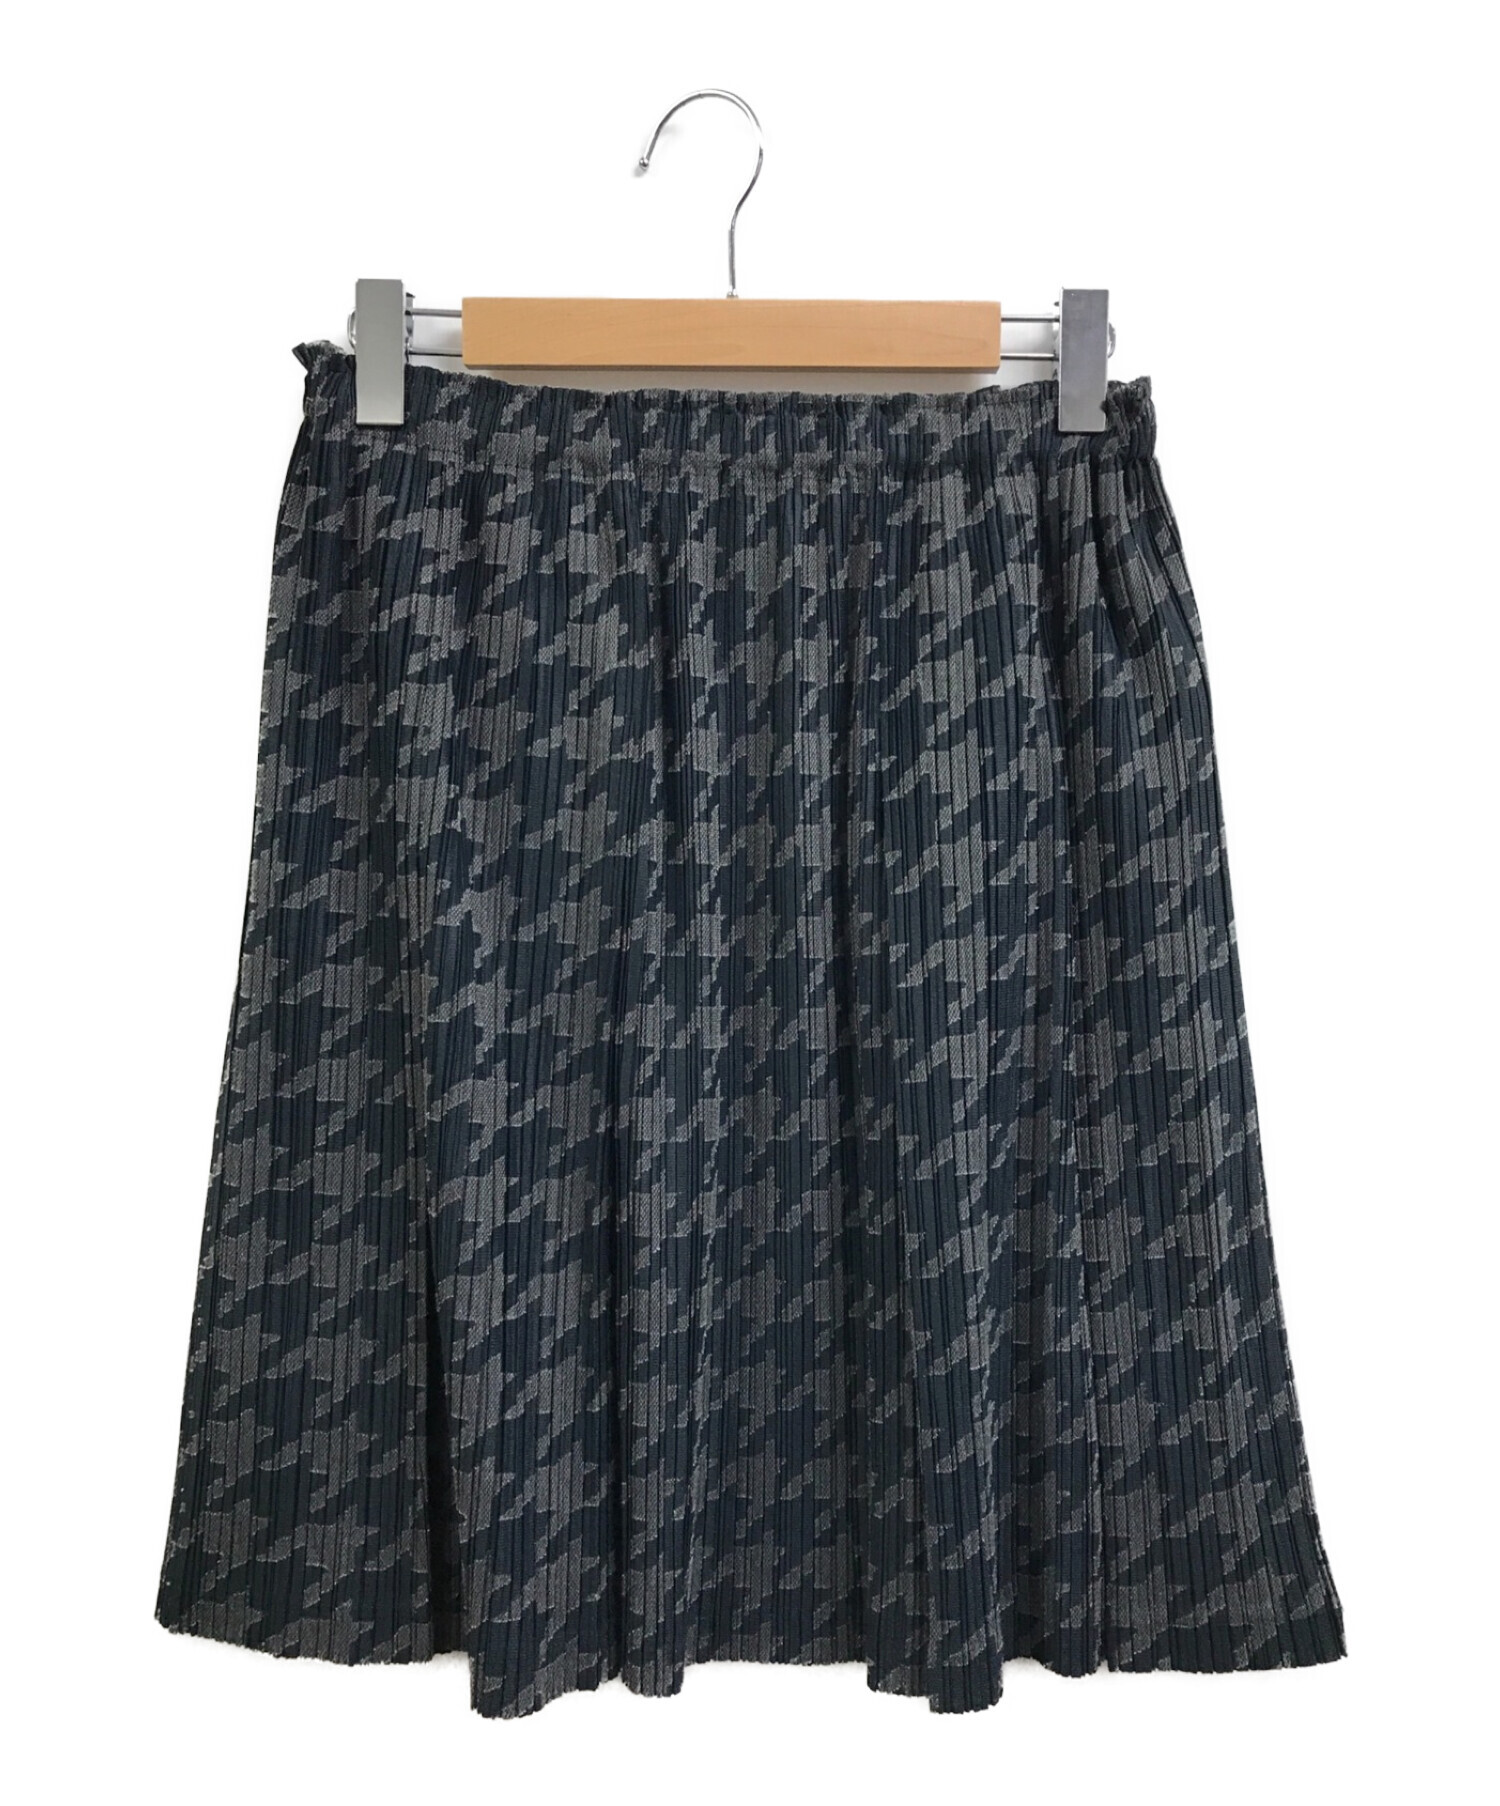 プリーツプリーズ ミニスカート サイズ3 Lスカート